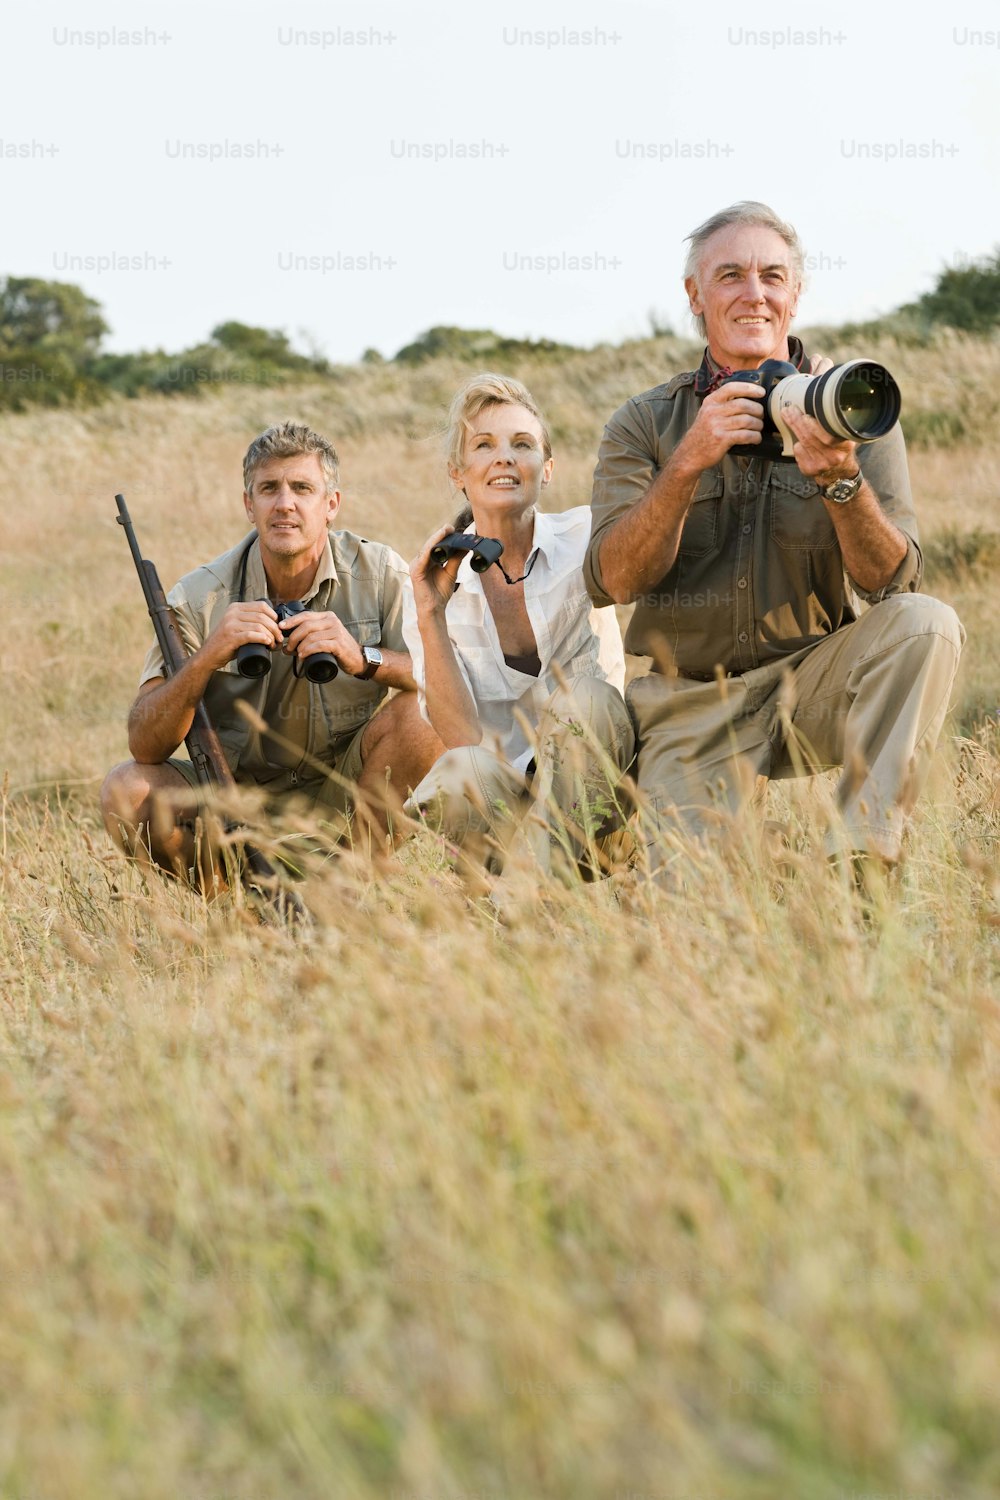 Un grupo de personas tomando fotos en un campo